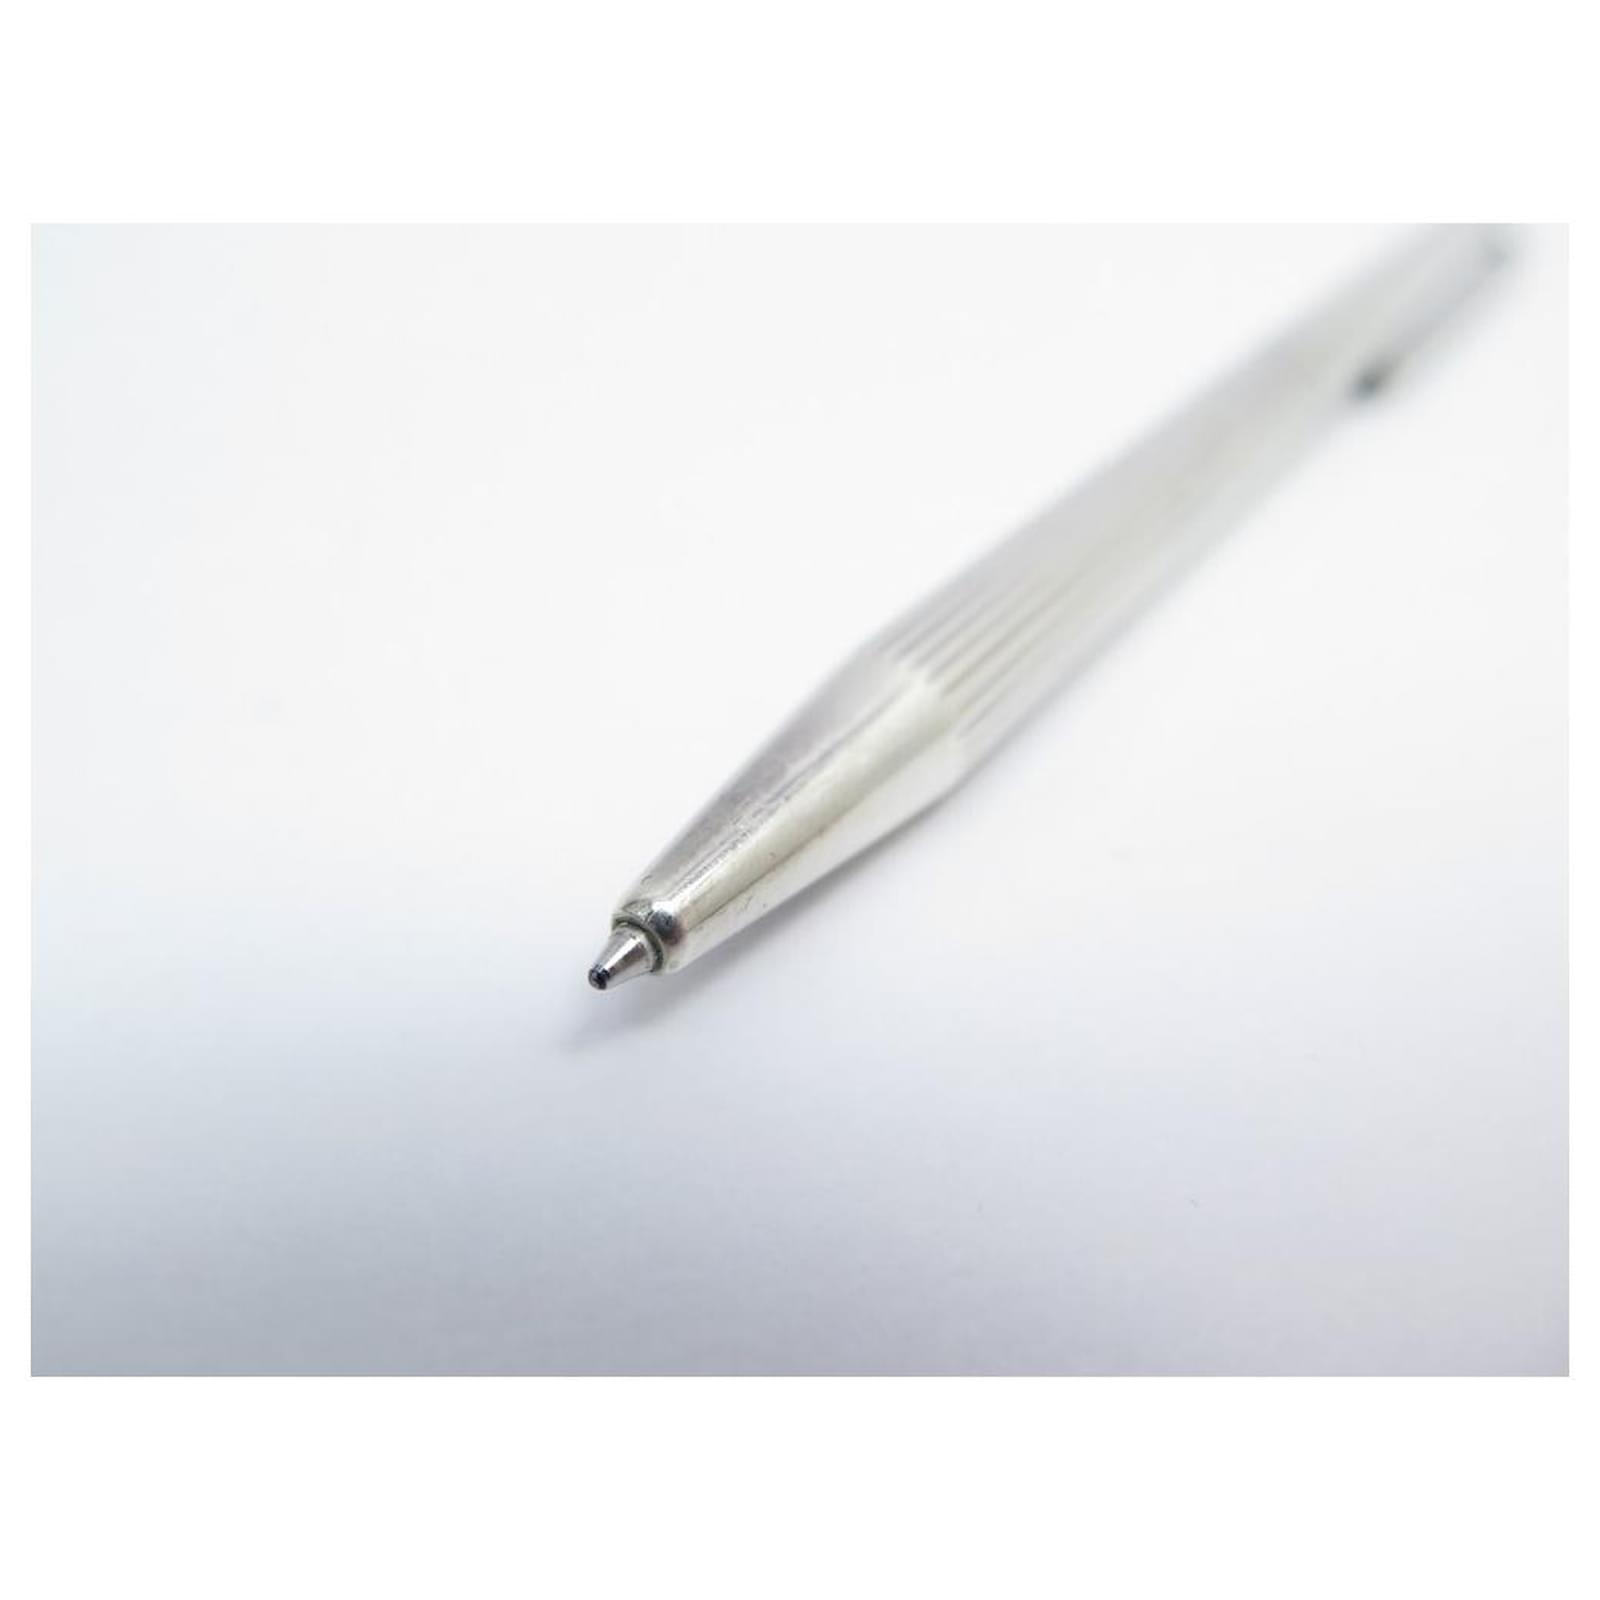 S.T. Dupont Classique Stylo Bille Silver Ballpoint Pen